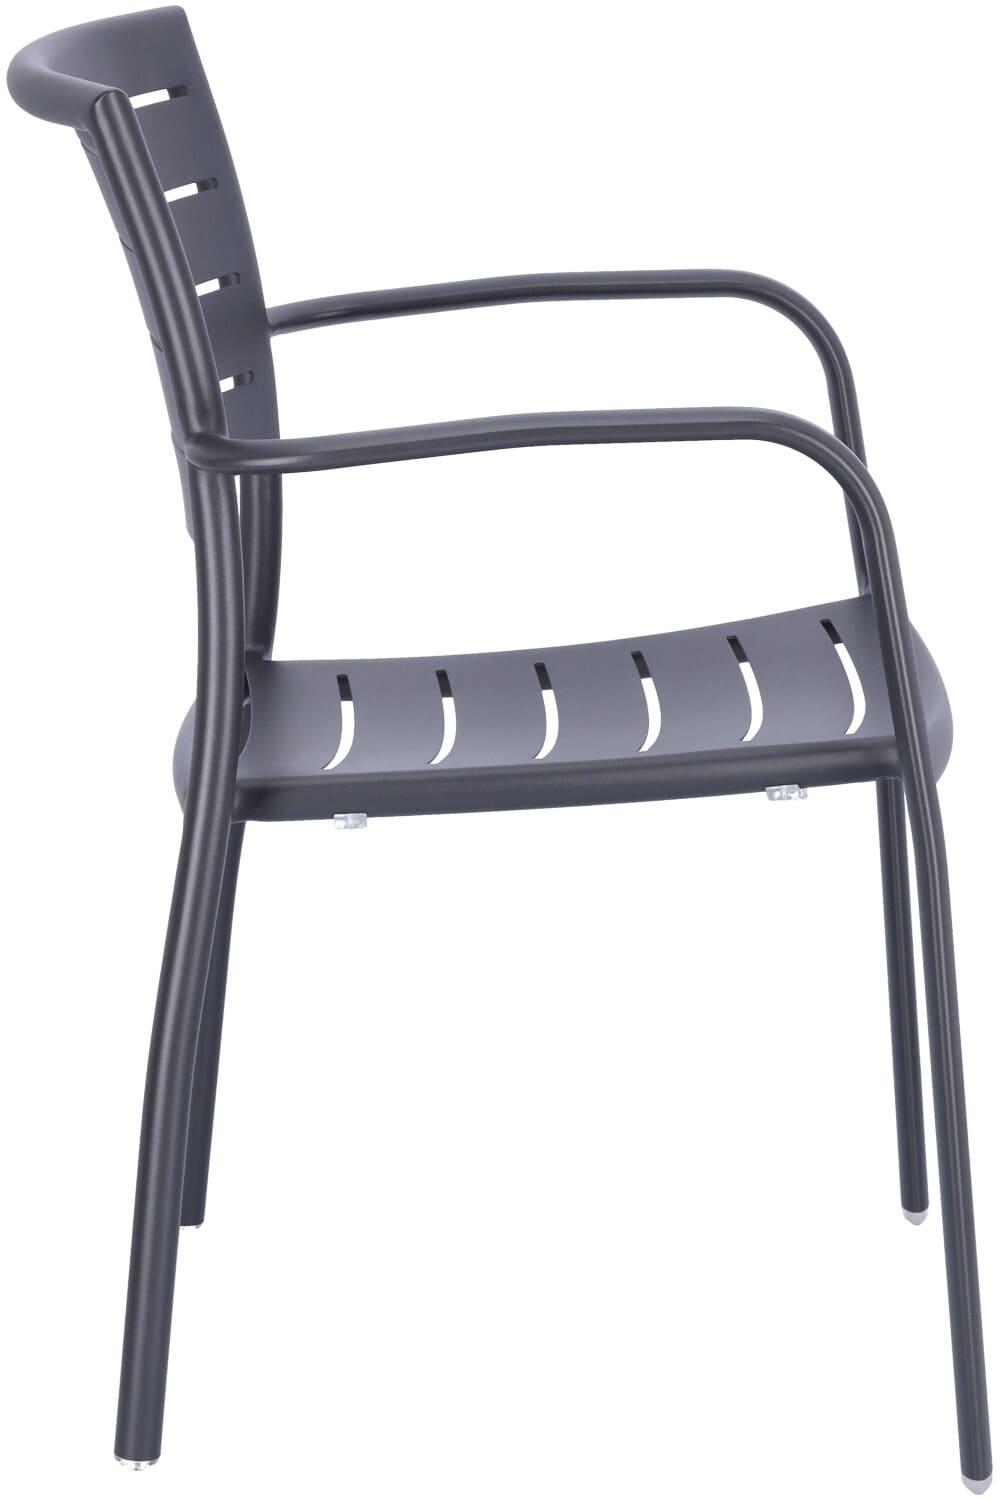 Abbildung arm chair Helke Seitenansicht